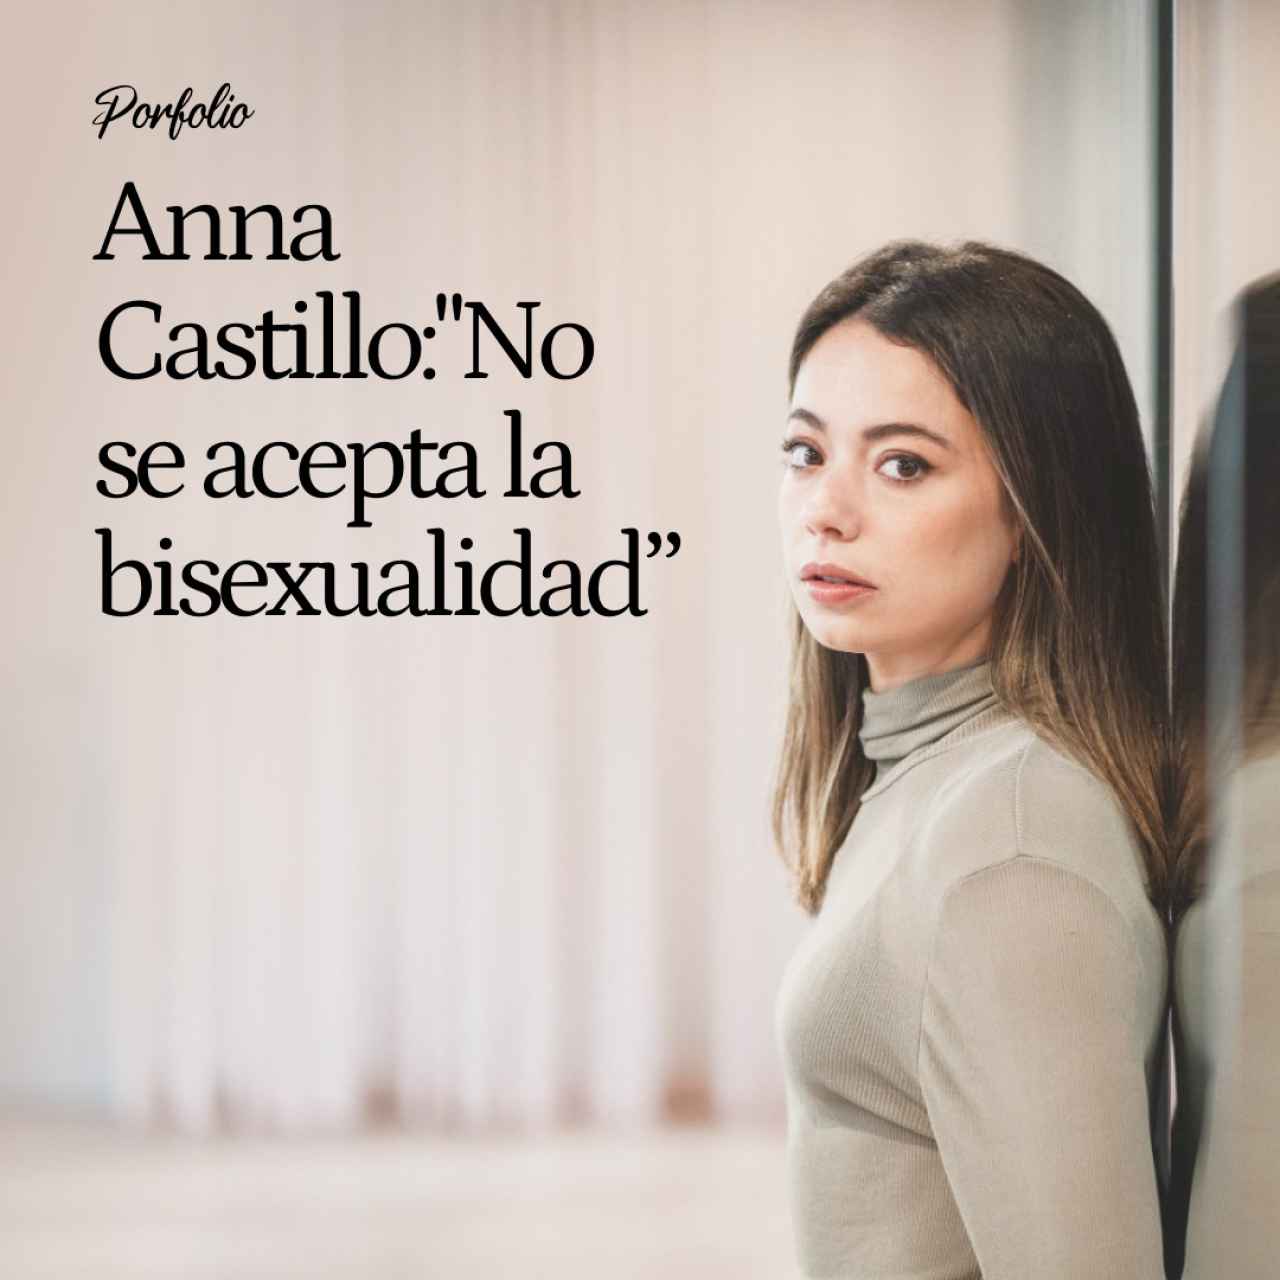 Anna Castillo: “Salí con una chica, me gustan los chicos y por eso me dicen gilipolleces como 'tú eres muy curiosa'. No se acepta la bisexualidad”